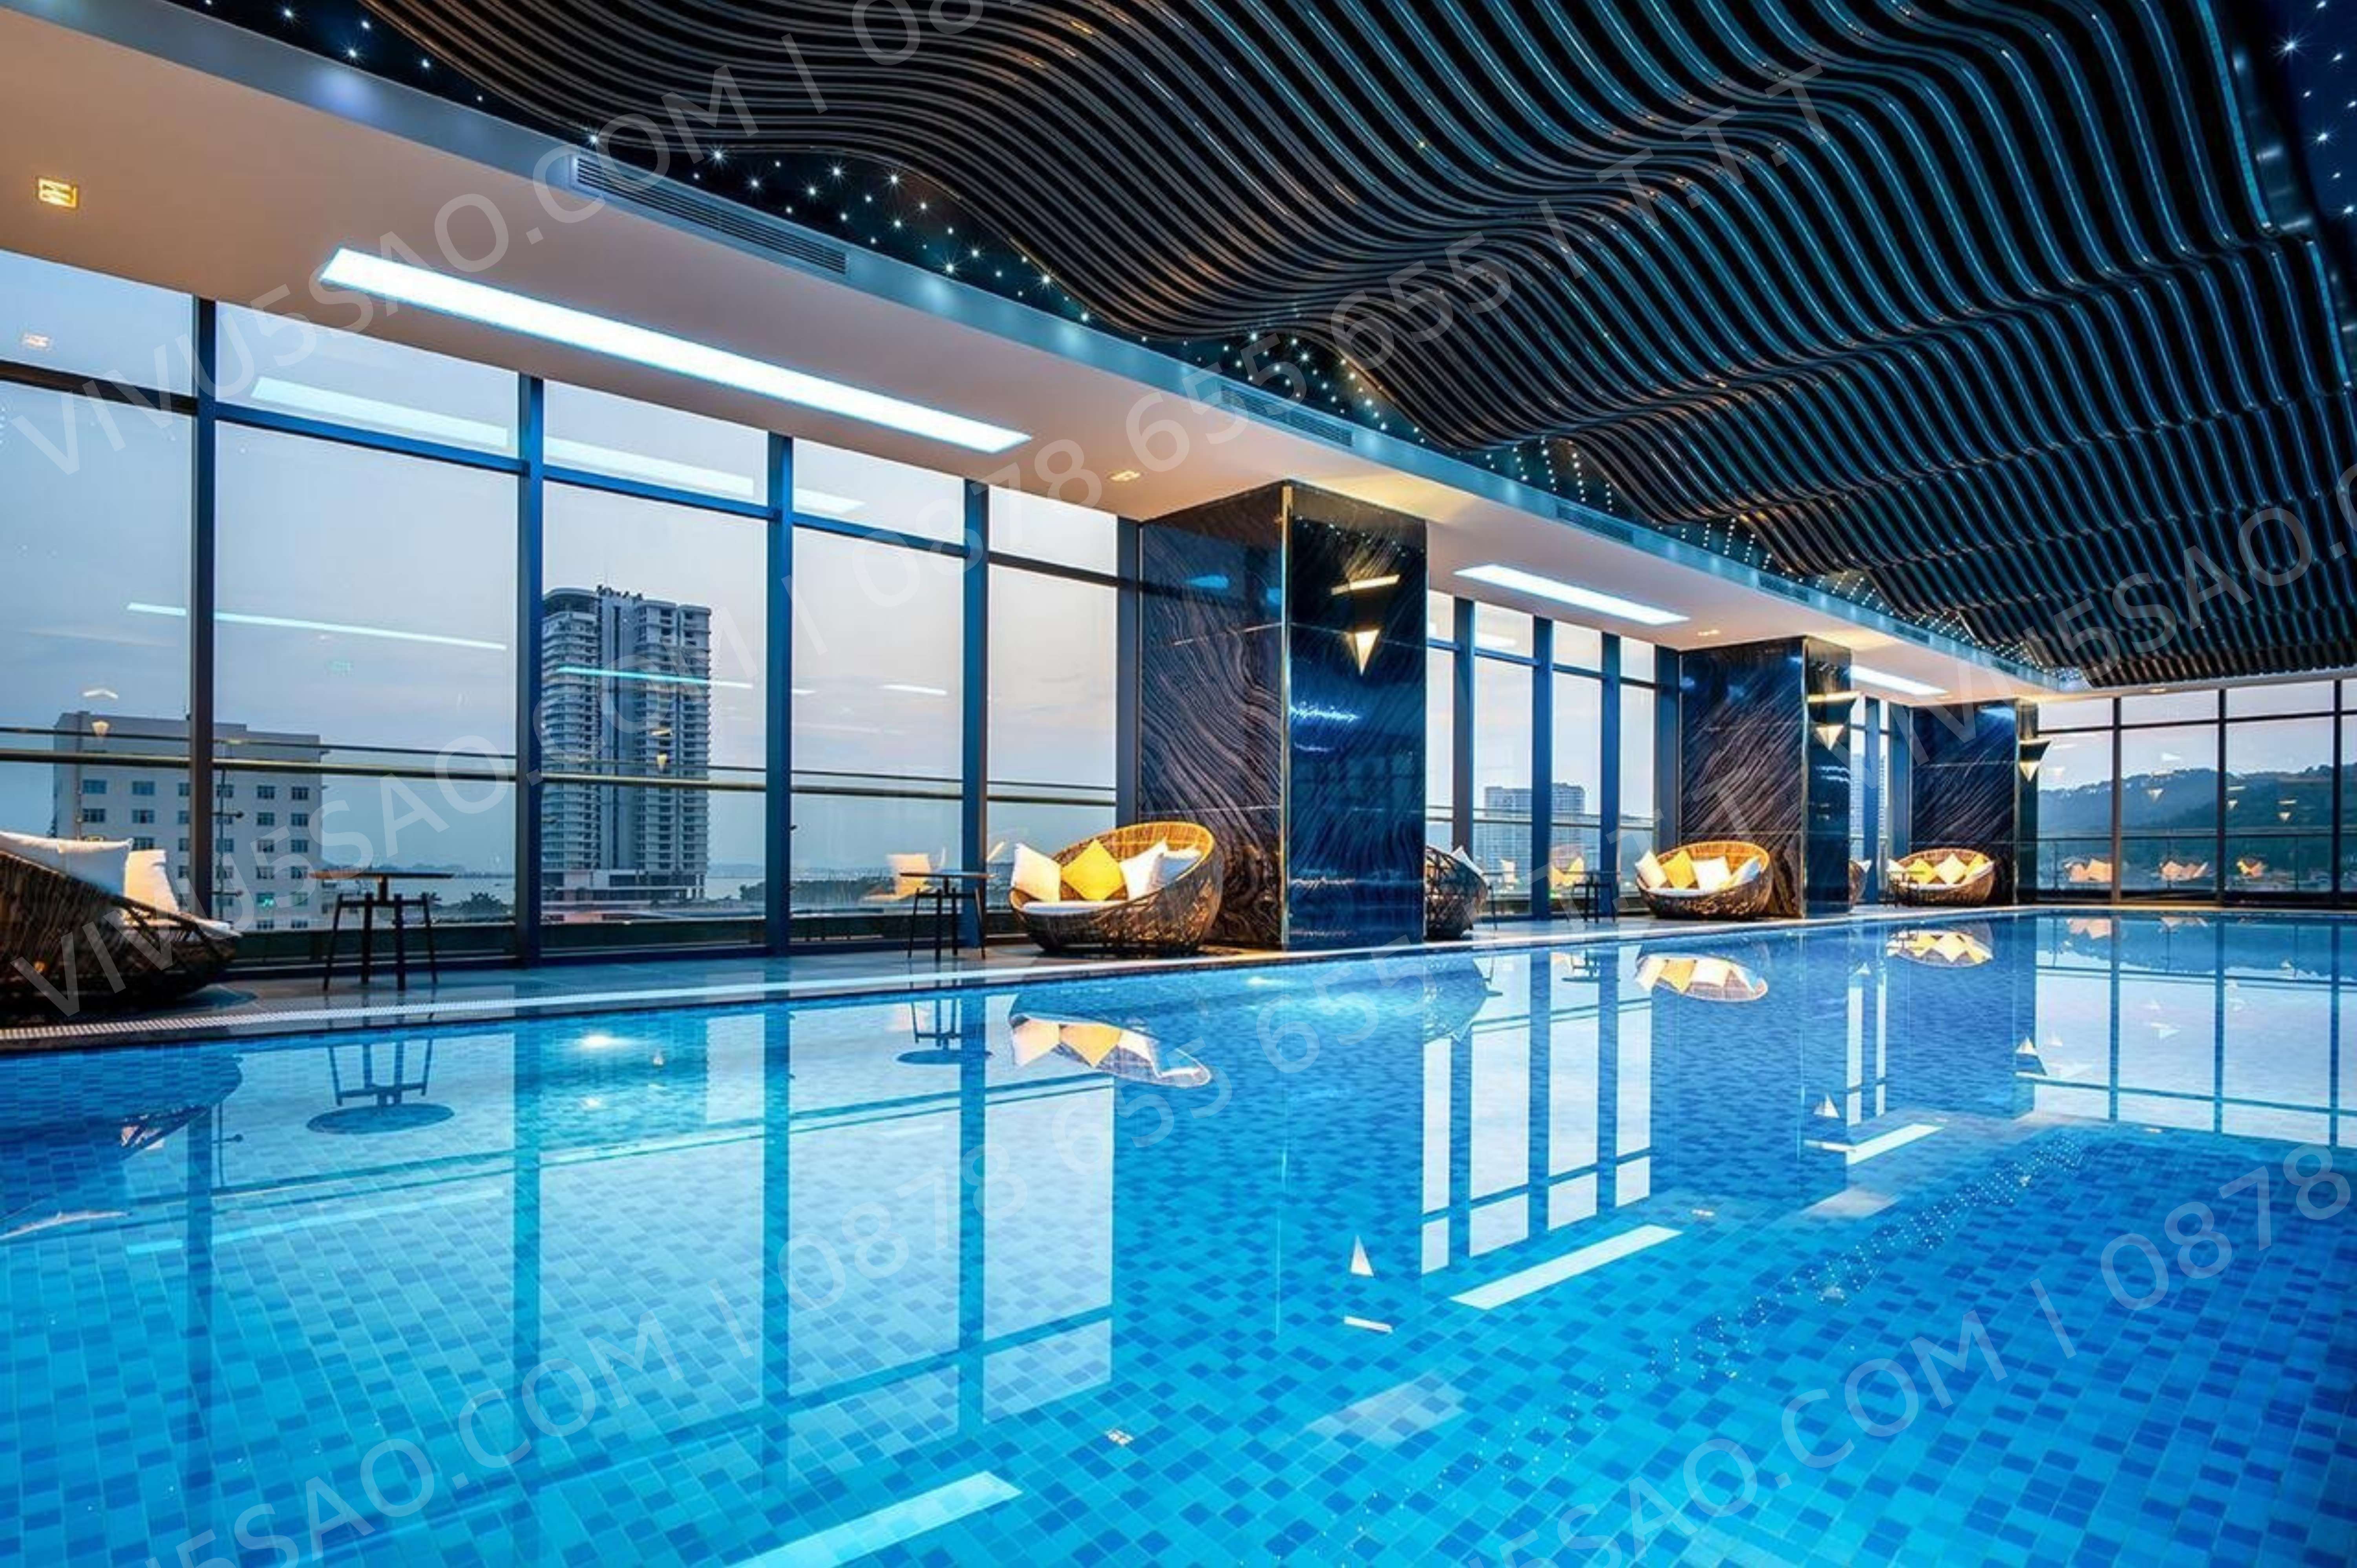 Bể bơi tại khách sạn Phát Linh Hotel Hạ Long | Vivu5sao.com 